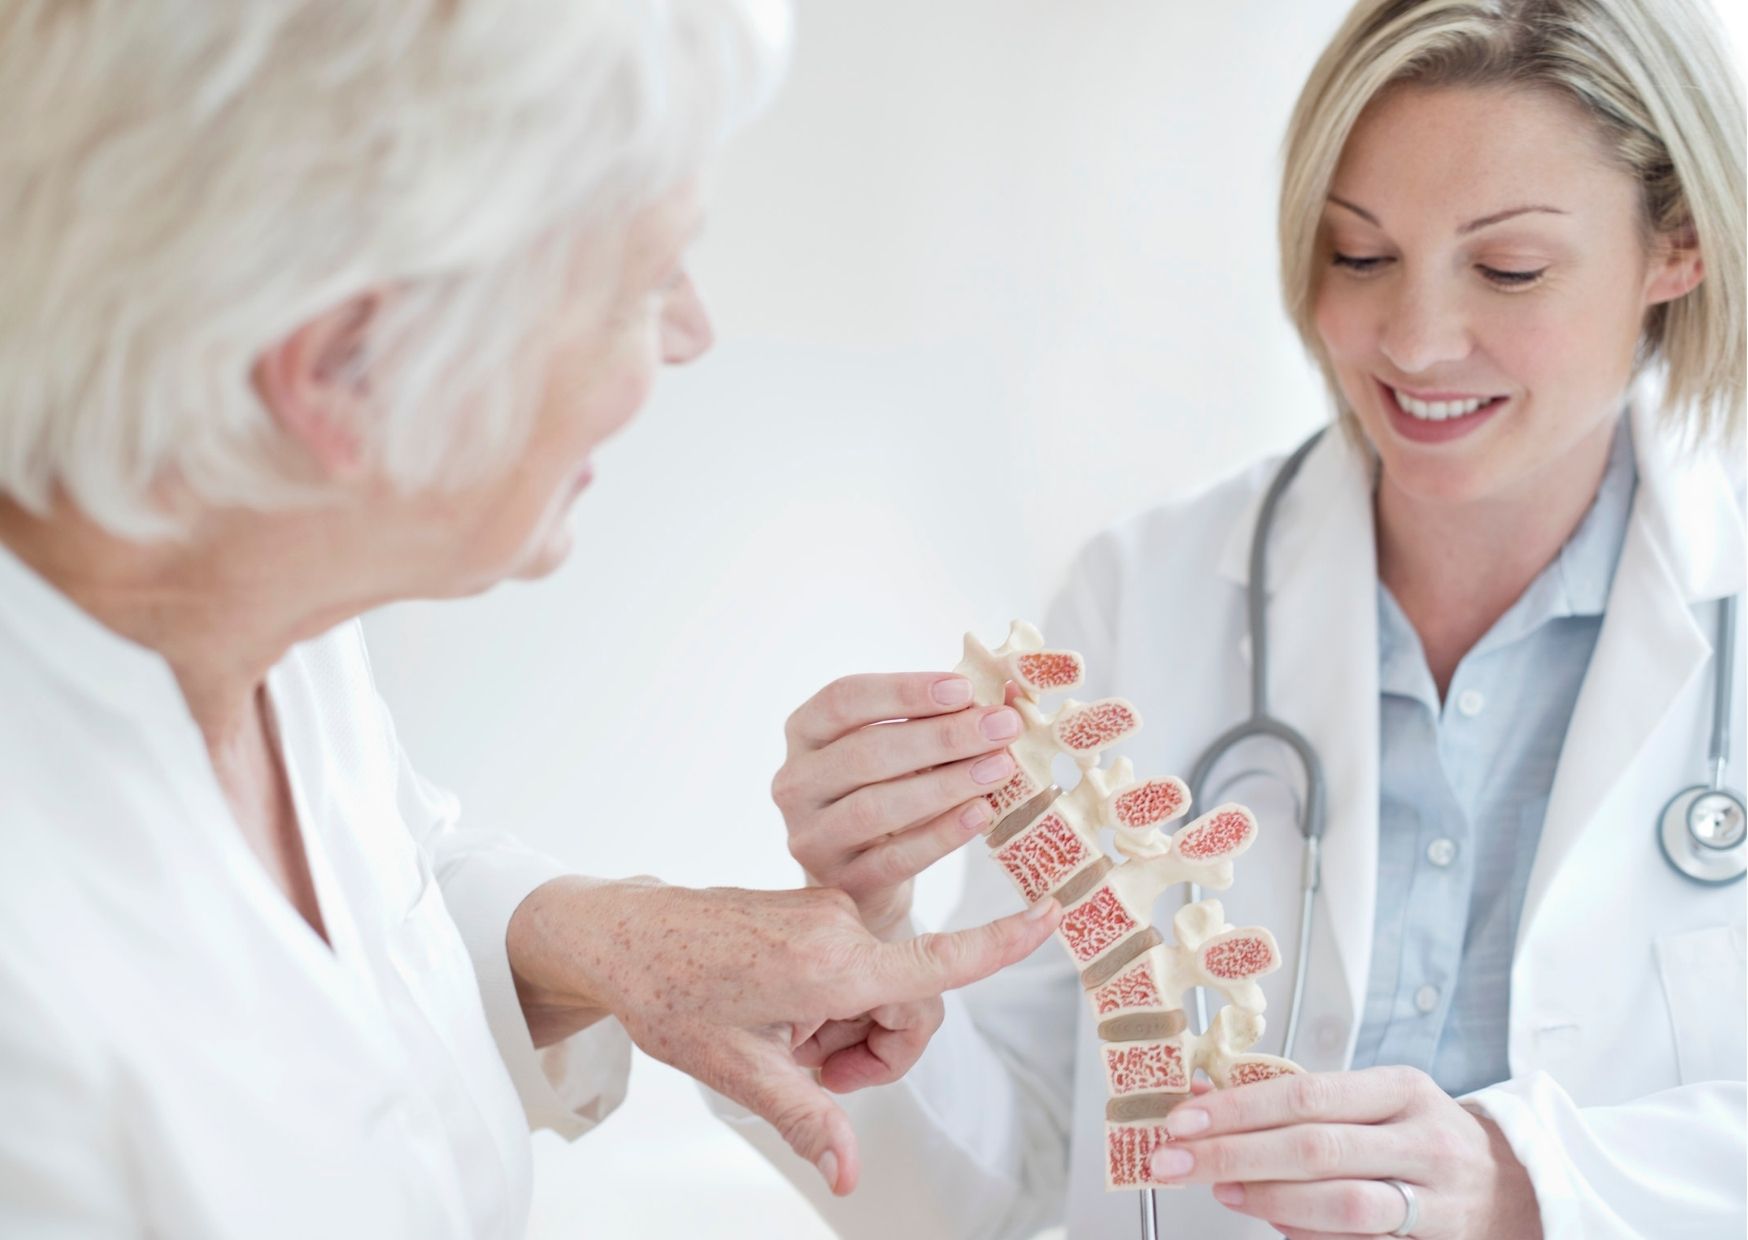 ameixa osteoporose cbem endocrinologia e metabologia